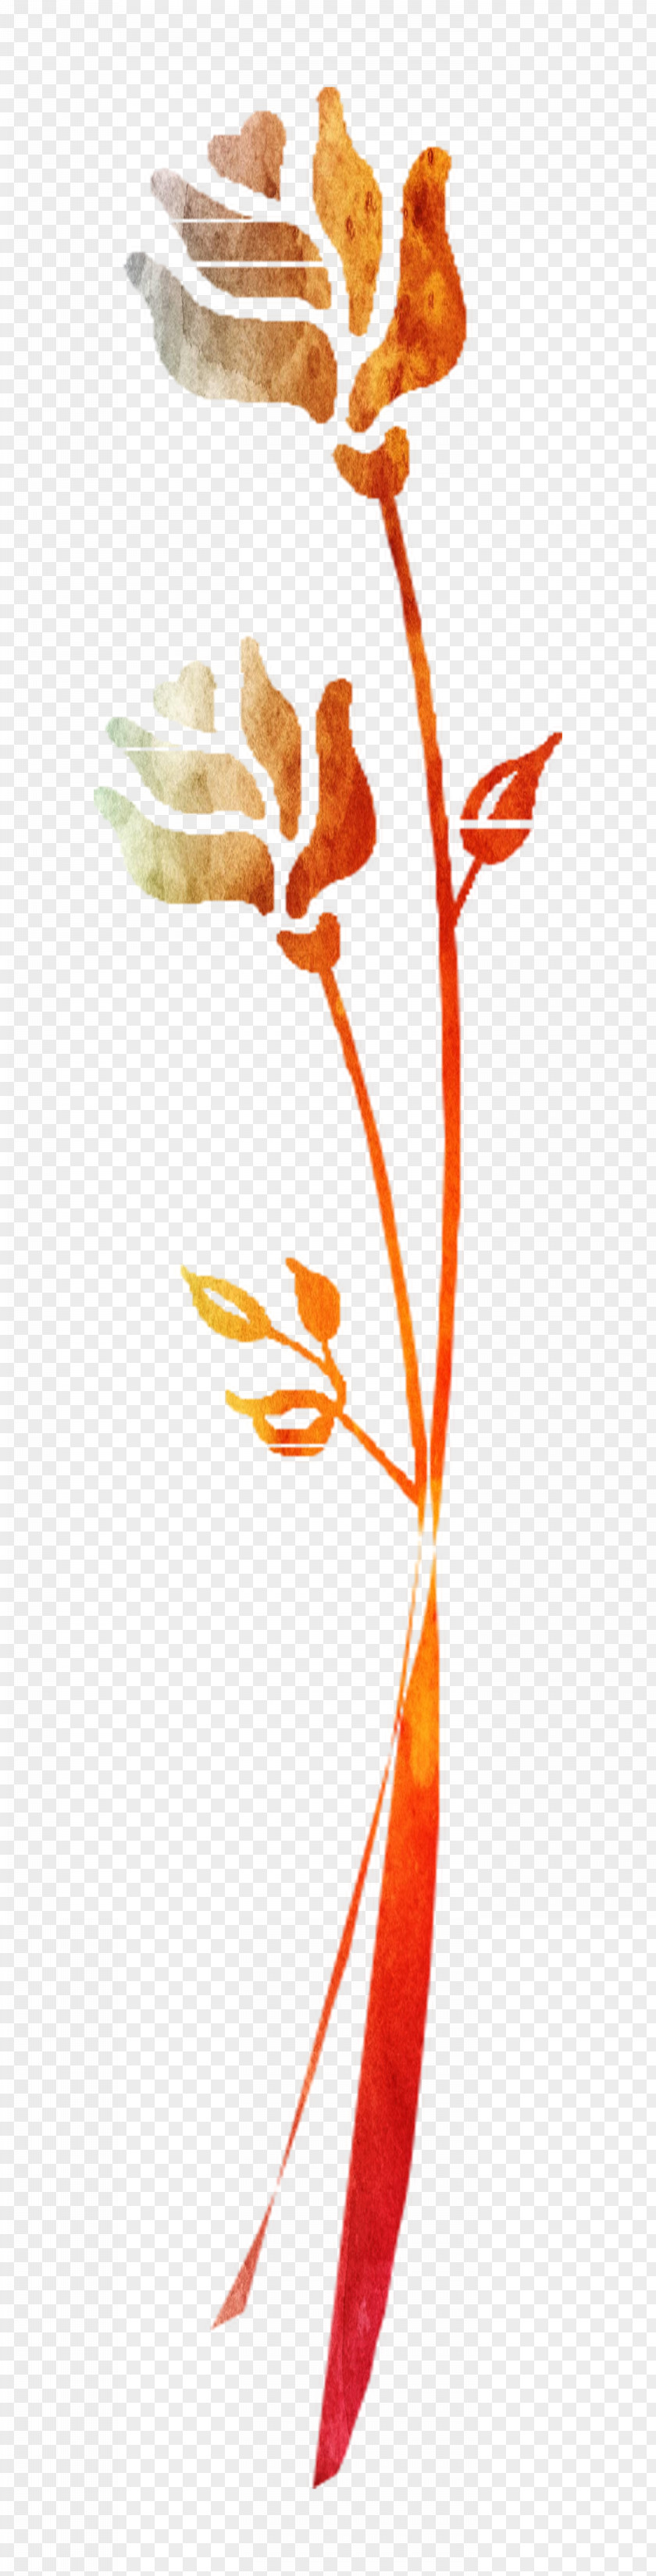 Plant Stem Leaf Twig Clip Art Flowering PNG